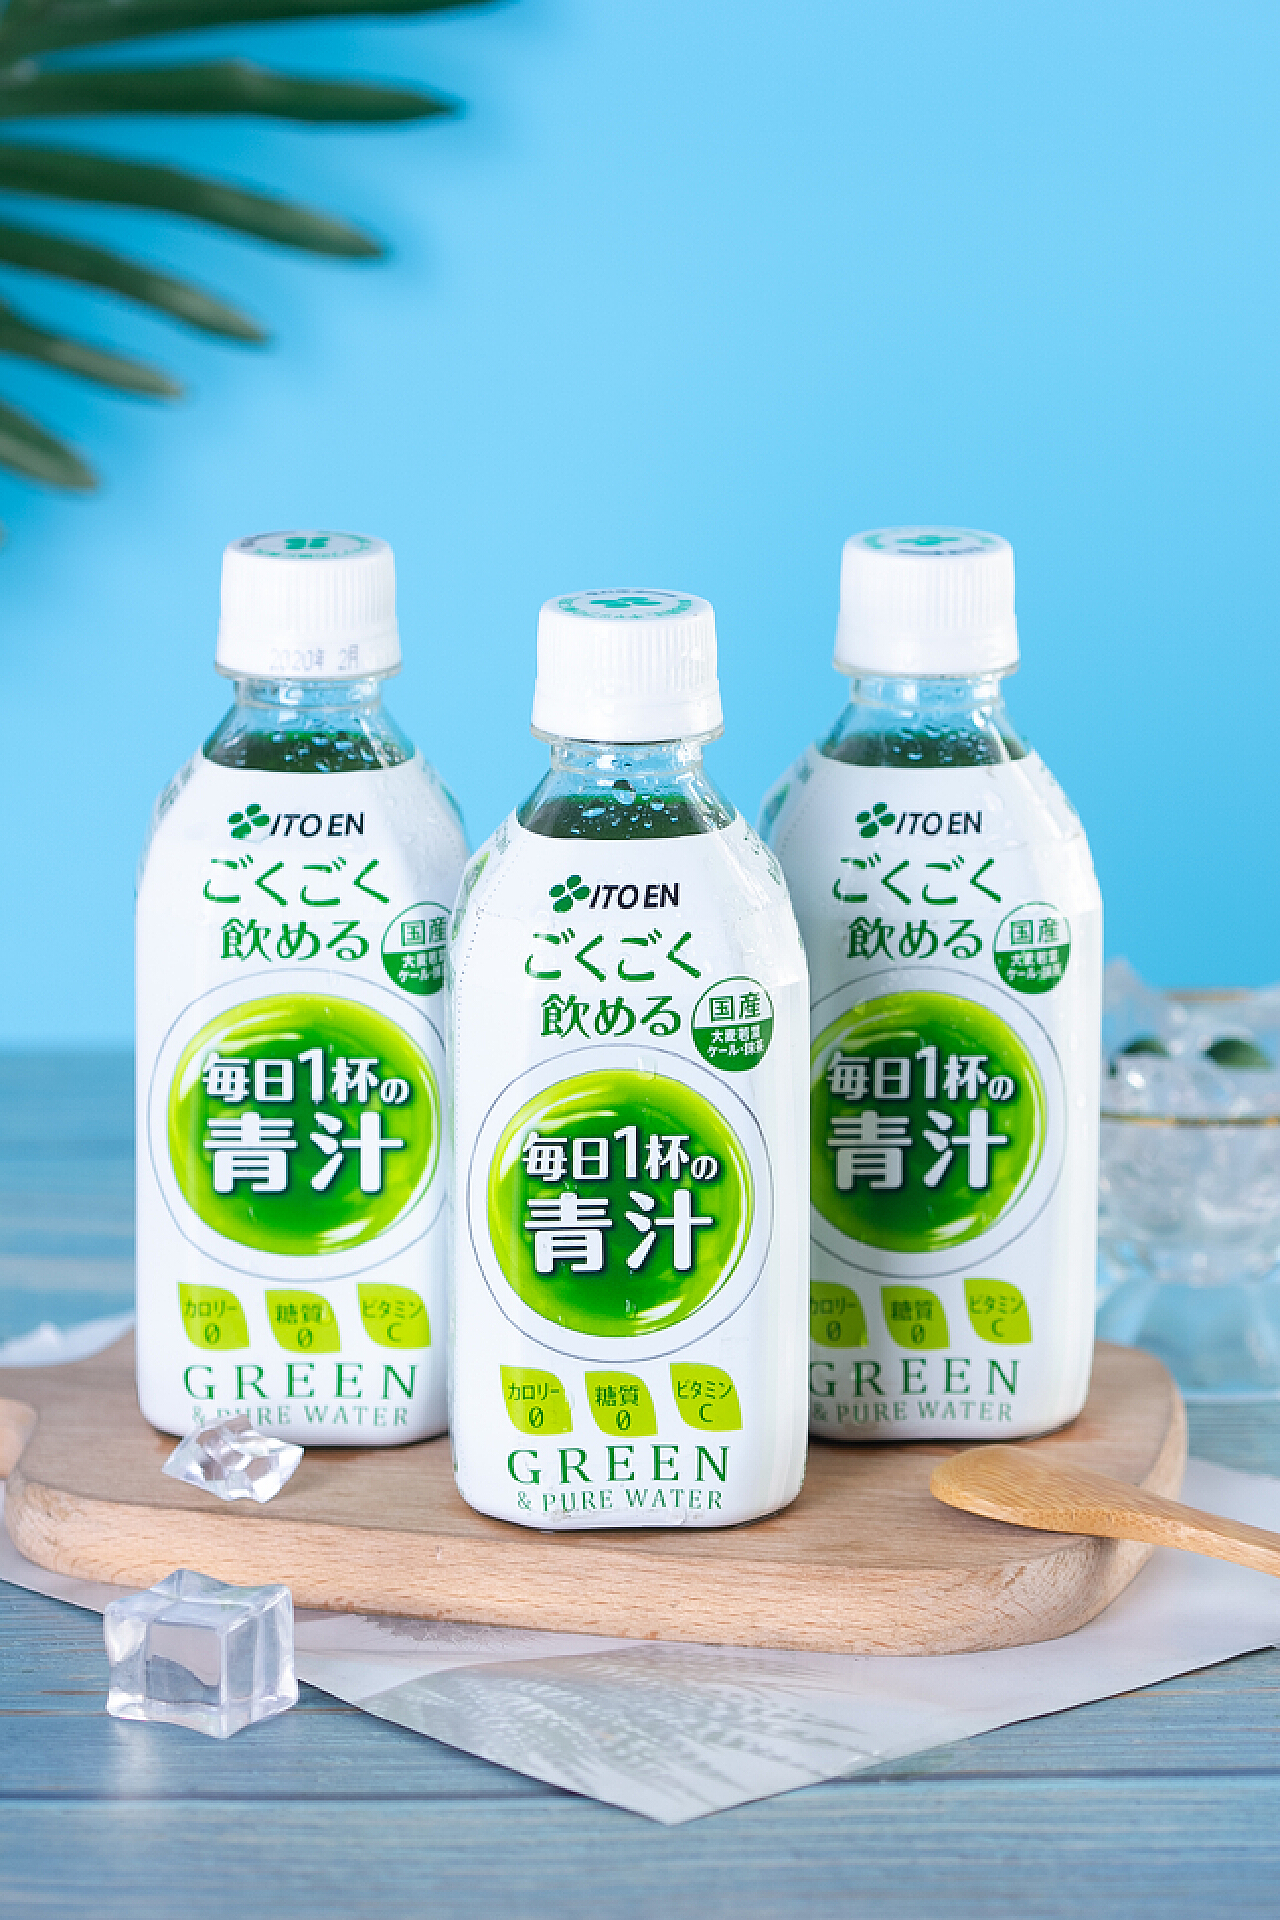 日本青汁进口物流清关流程 - 哔哩哔哩